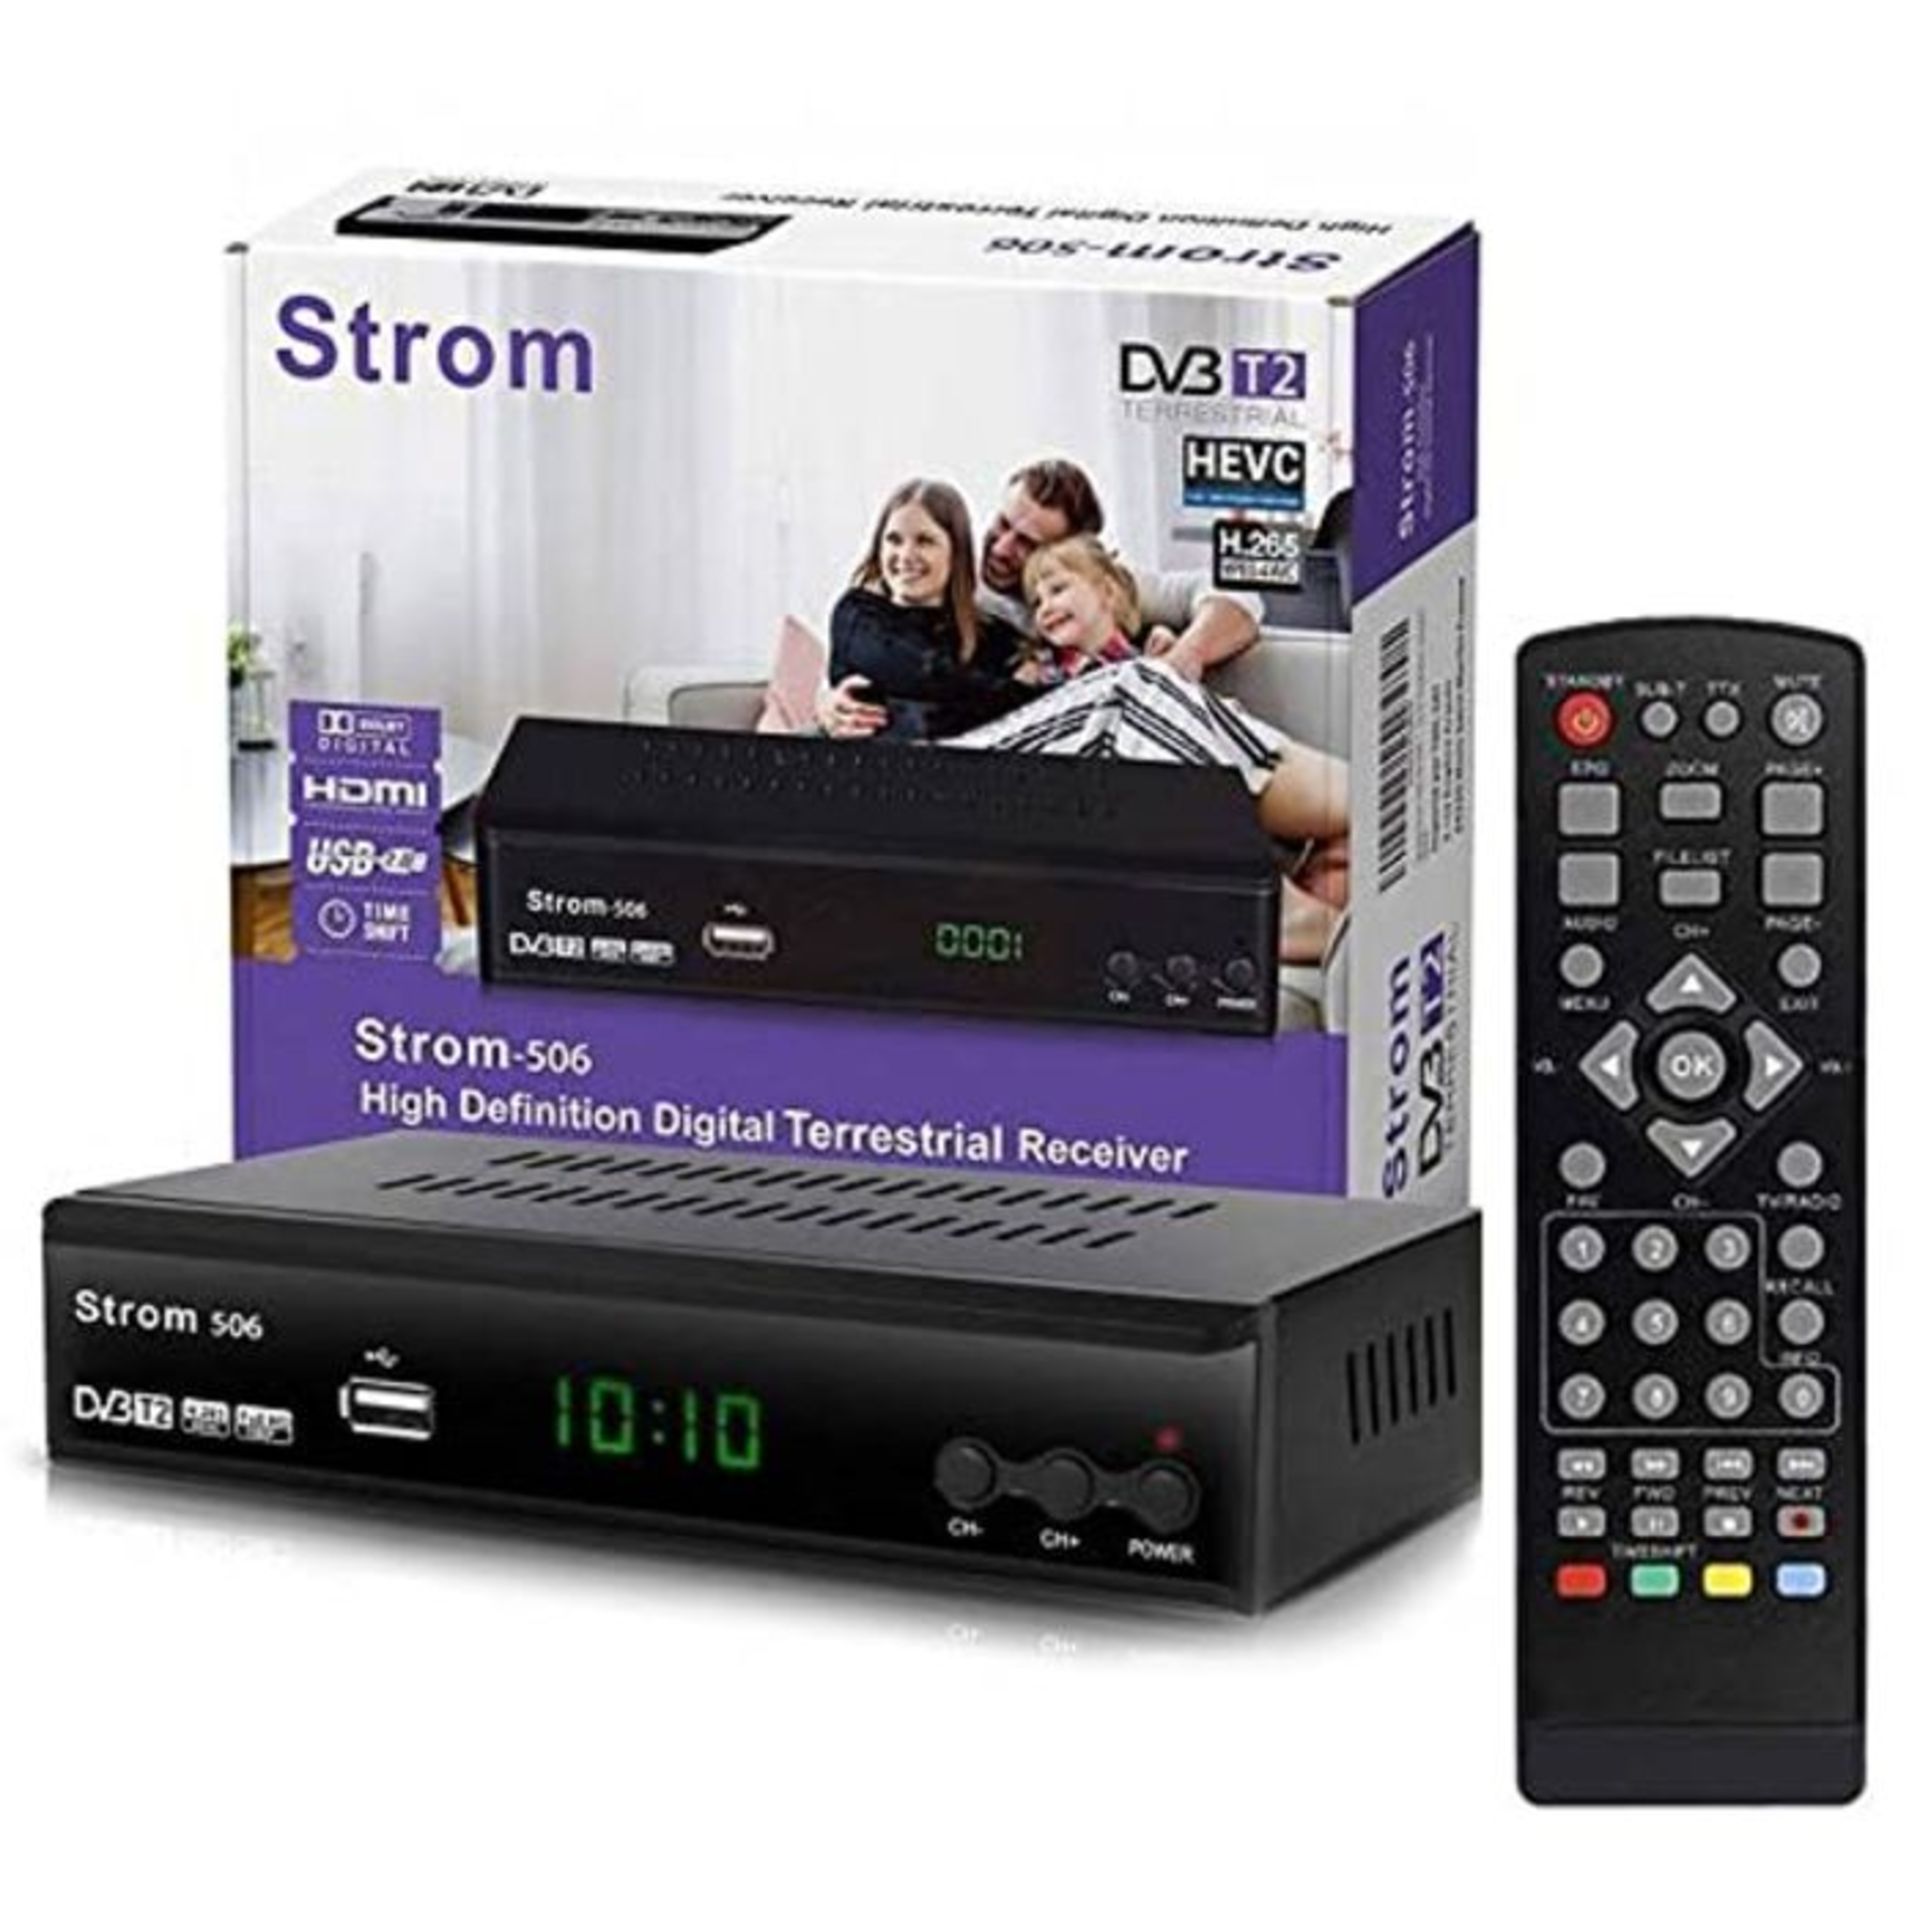 Strom 506 - TNT HD Decodeur TNT HD Pour TV / Recepteur TNT HD / Adaptateur TNT Décode